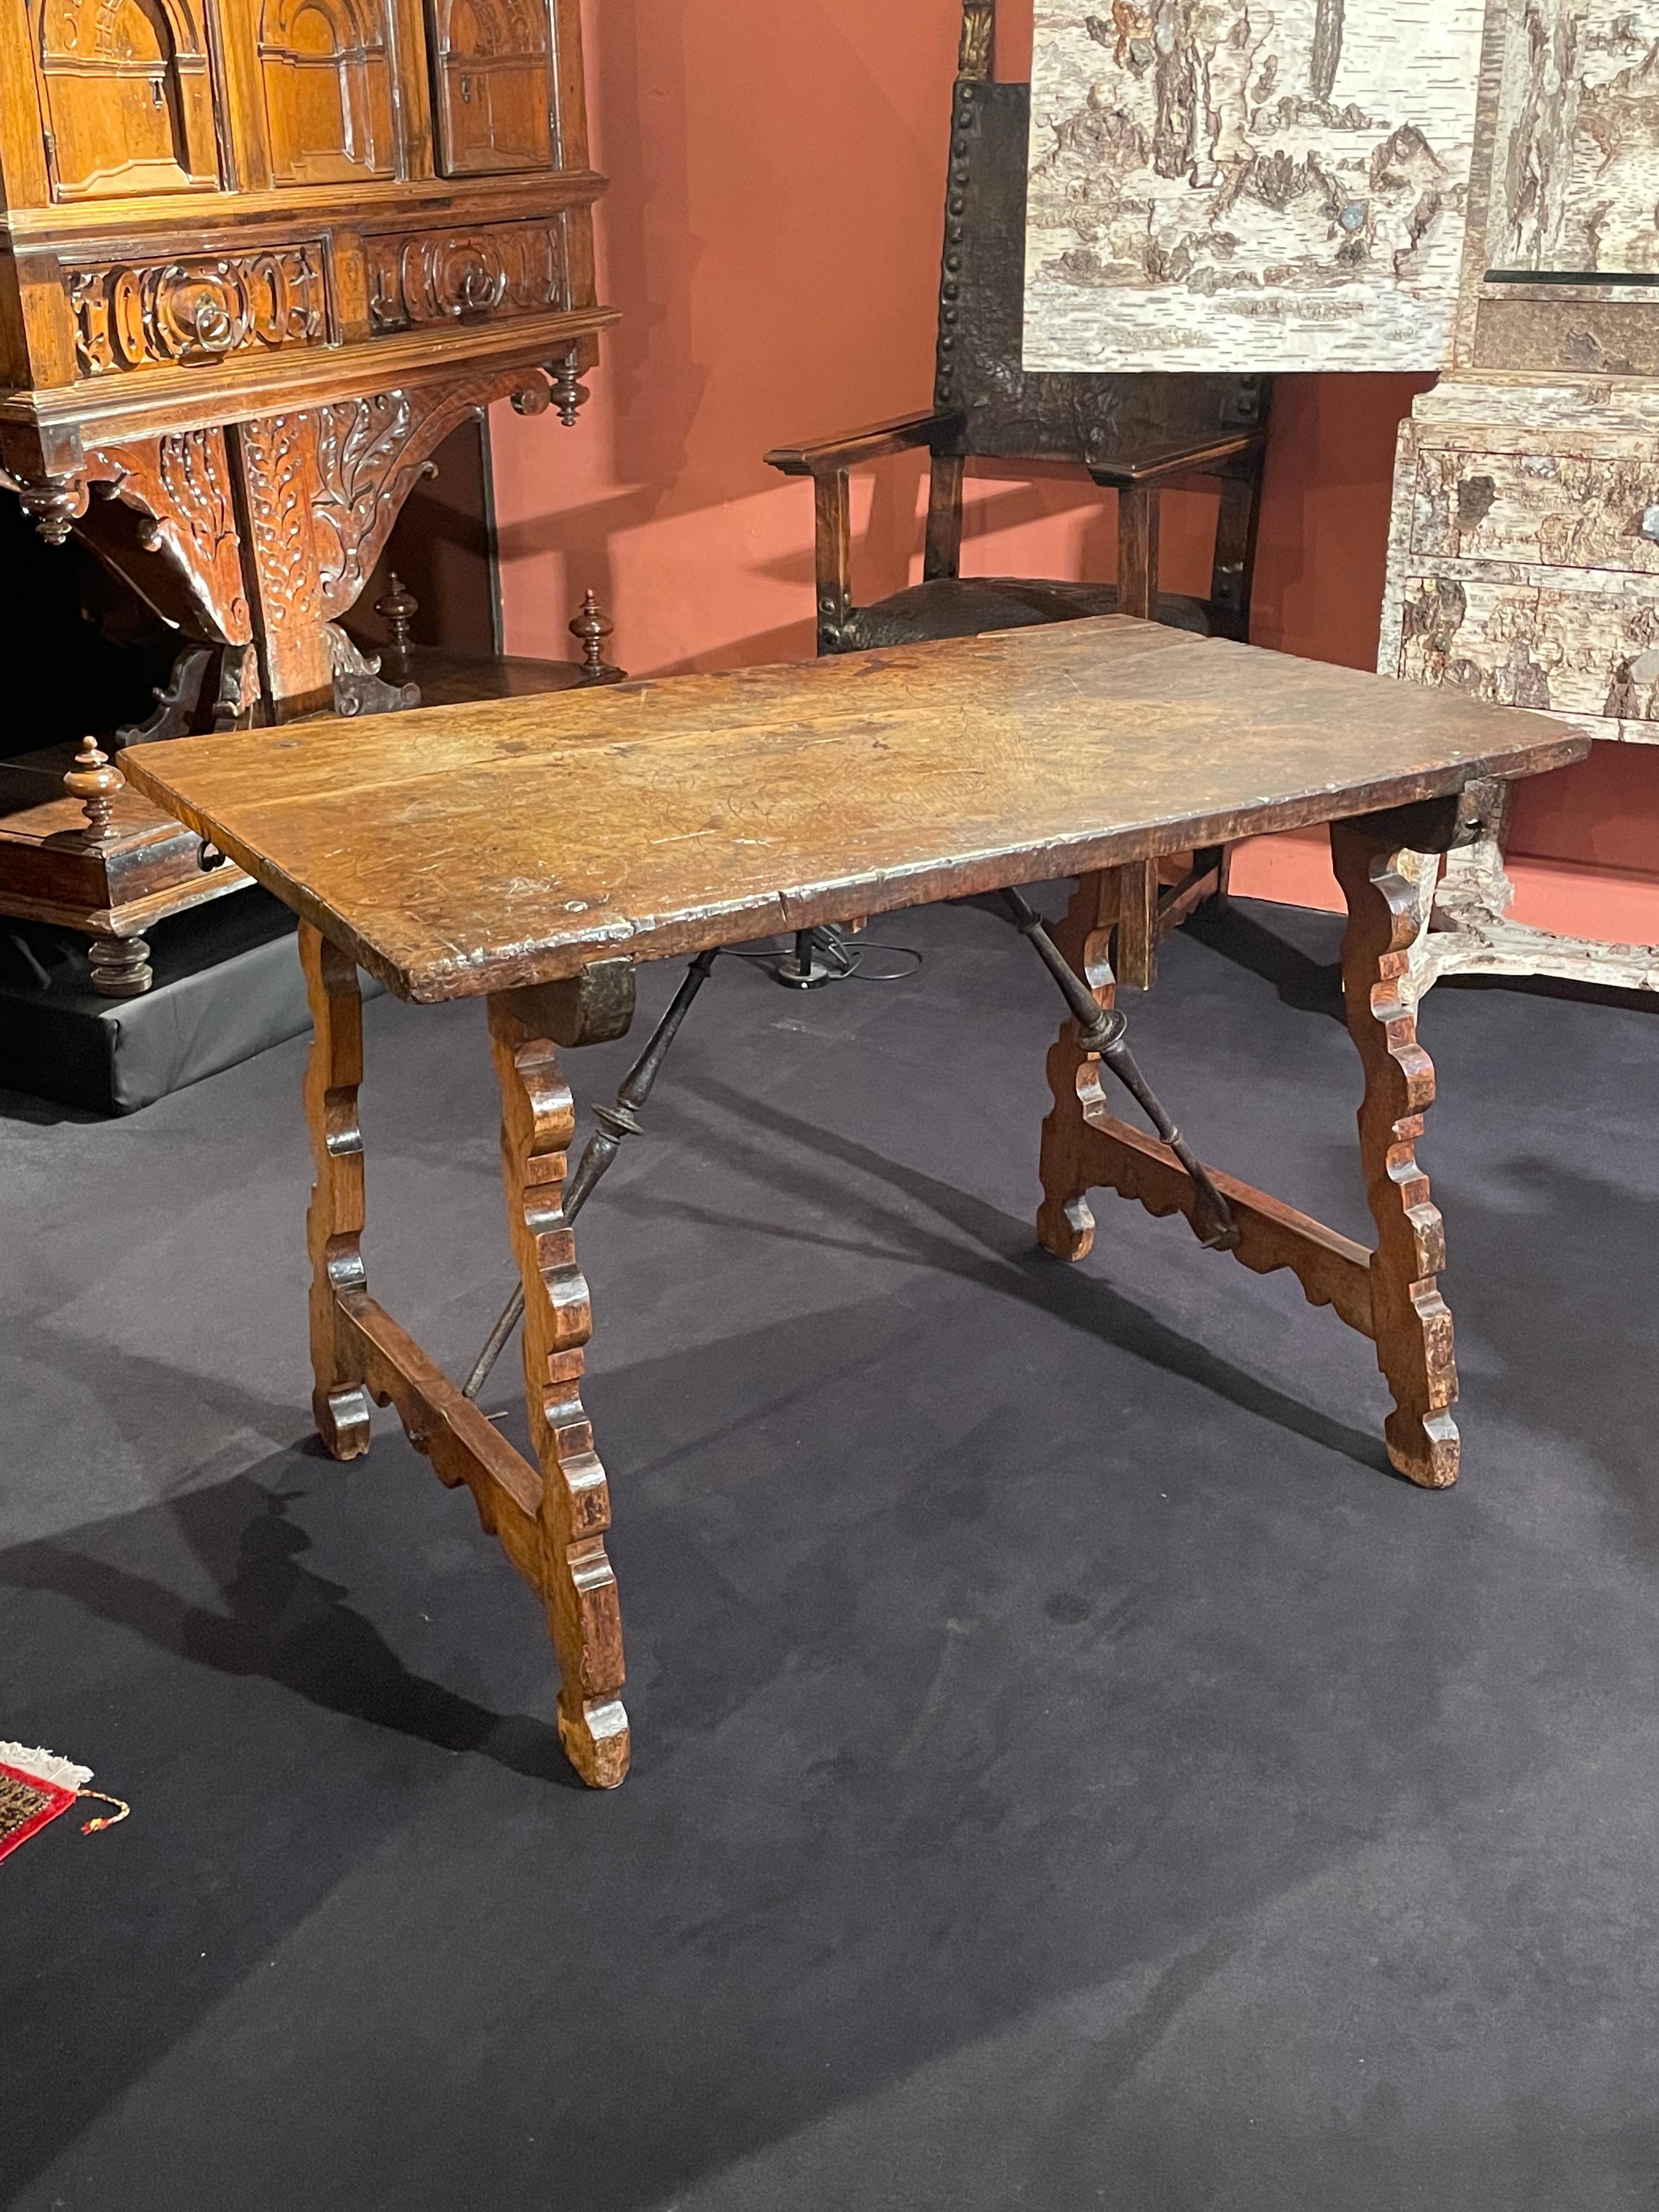 Ce type de table a été inventé par des ébénistes espagnols du XVIe siècle.

Cette table élégante est facilement démontable. Son plateau rectangulaire est assemblé aux pieds par des crochets en fer.
Il repose sur des supports en forme de lyre à